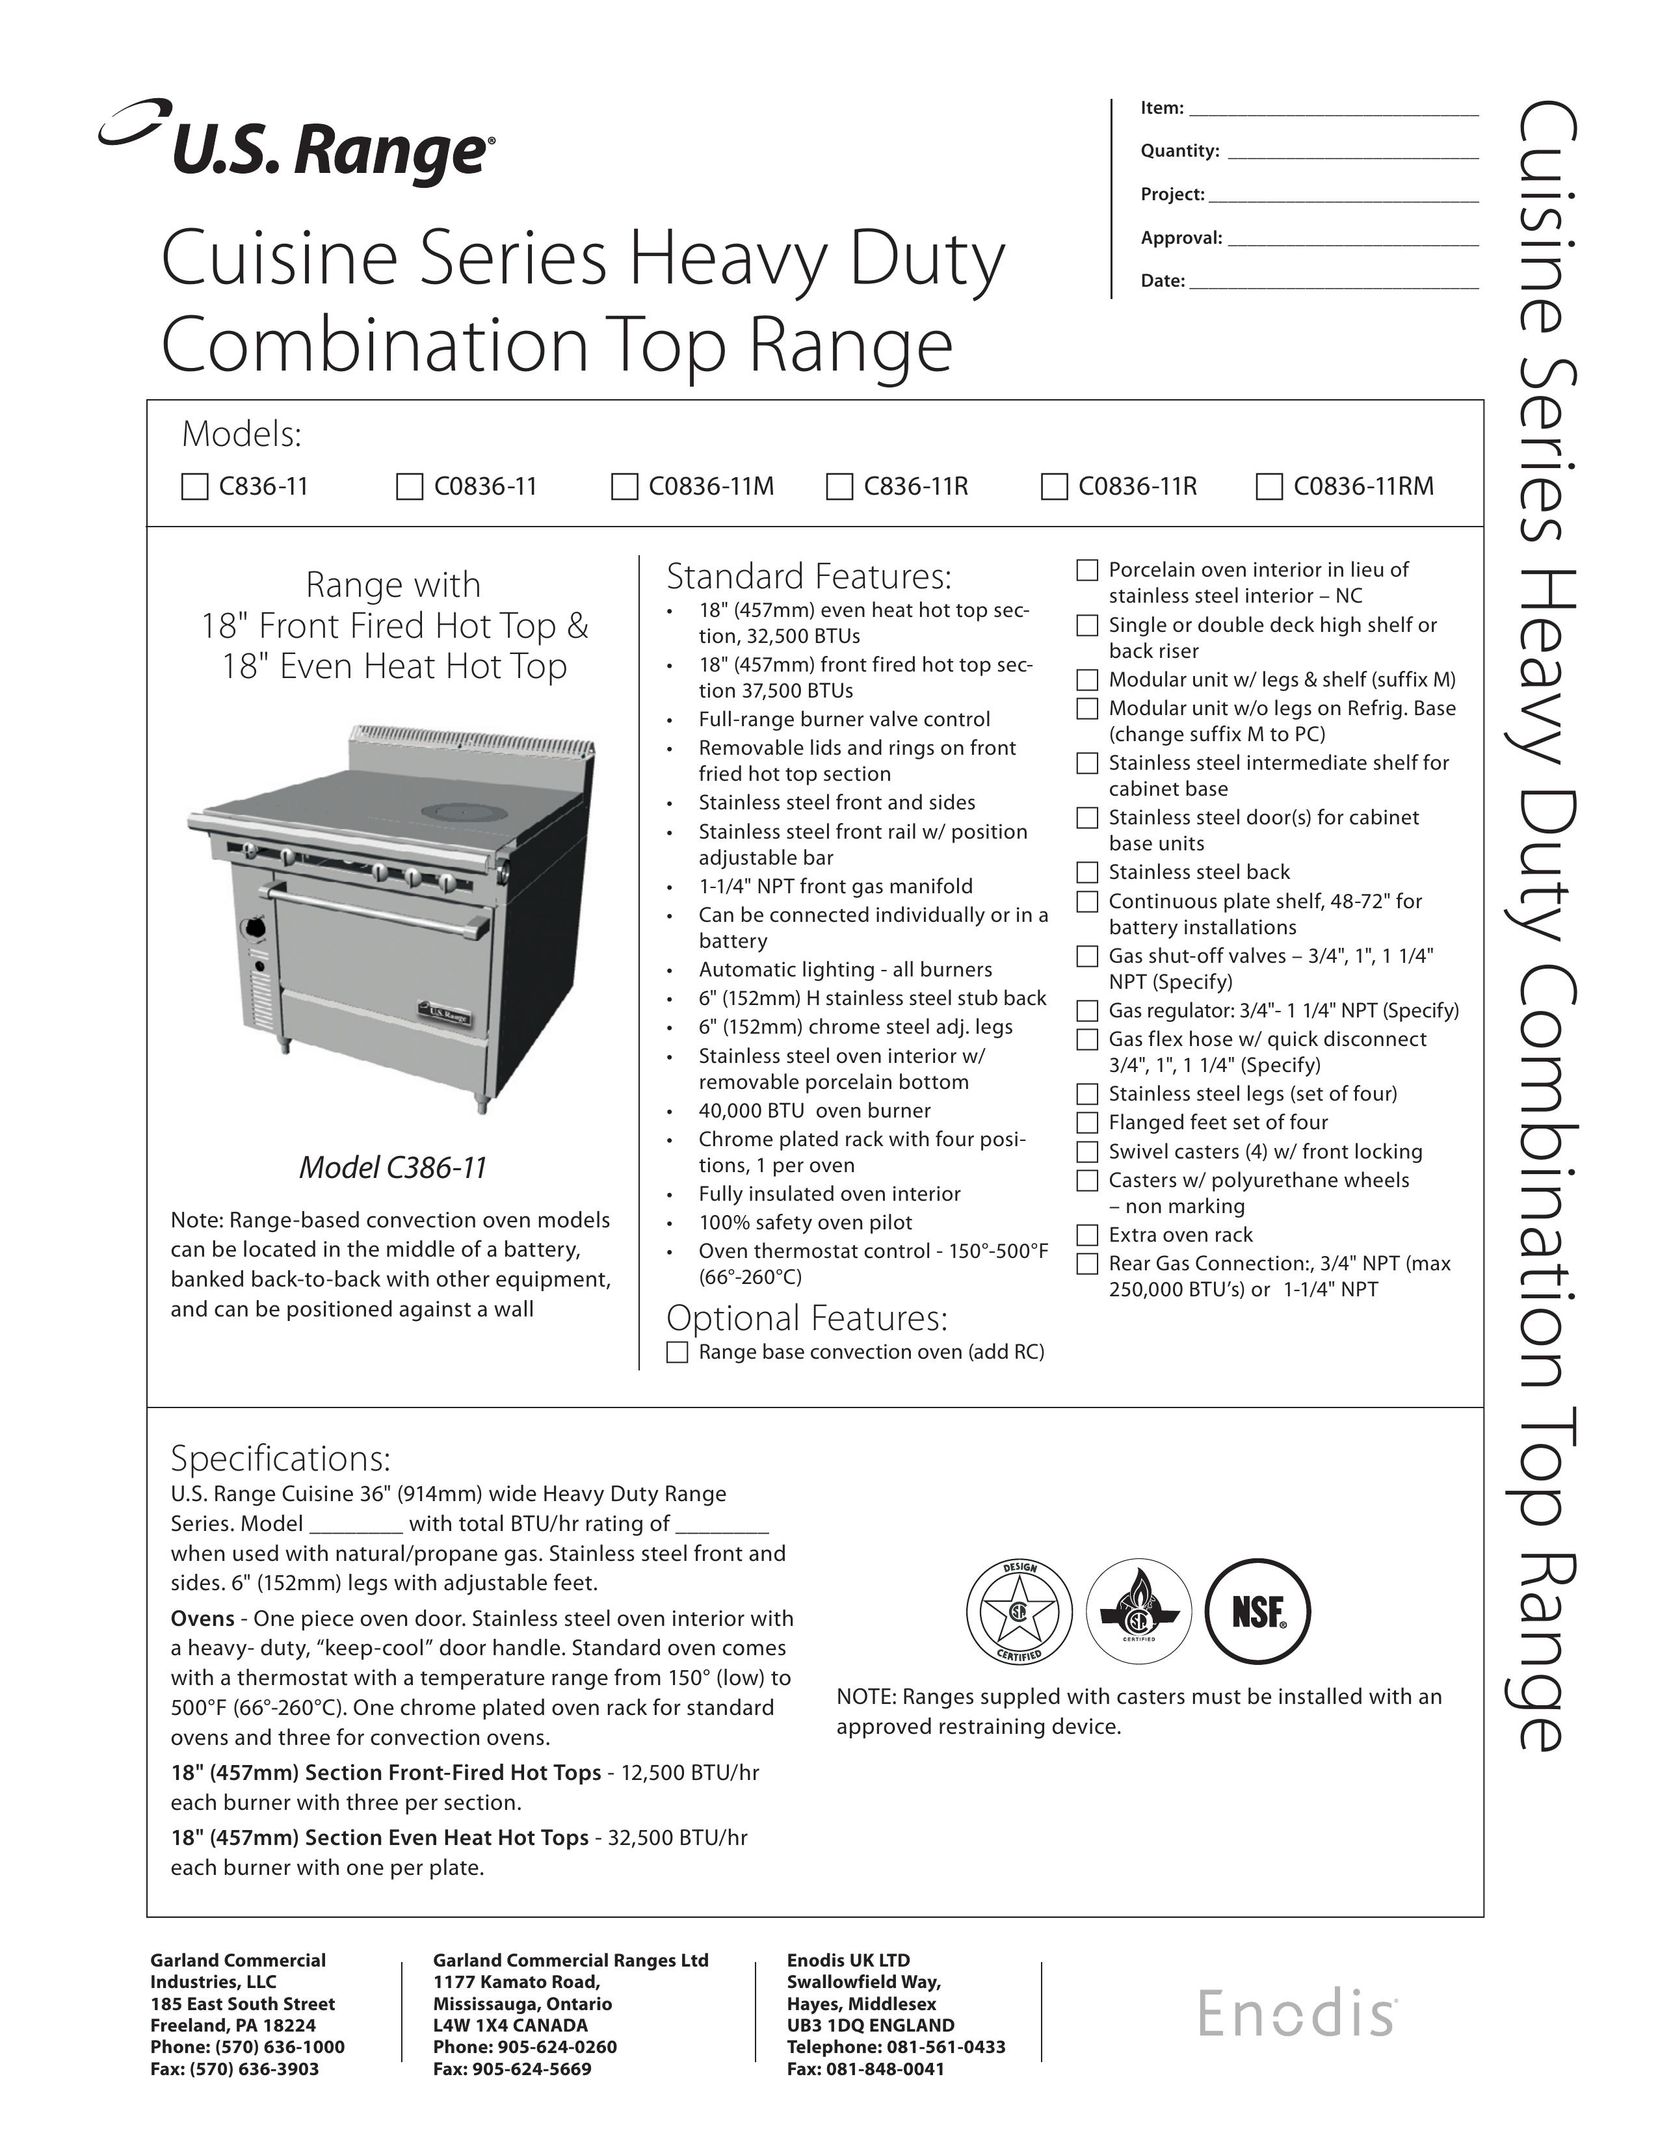 Garland C0836-11M Range User Manual